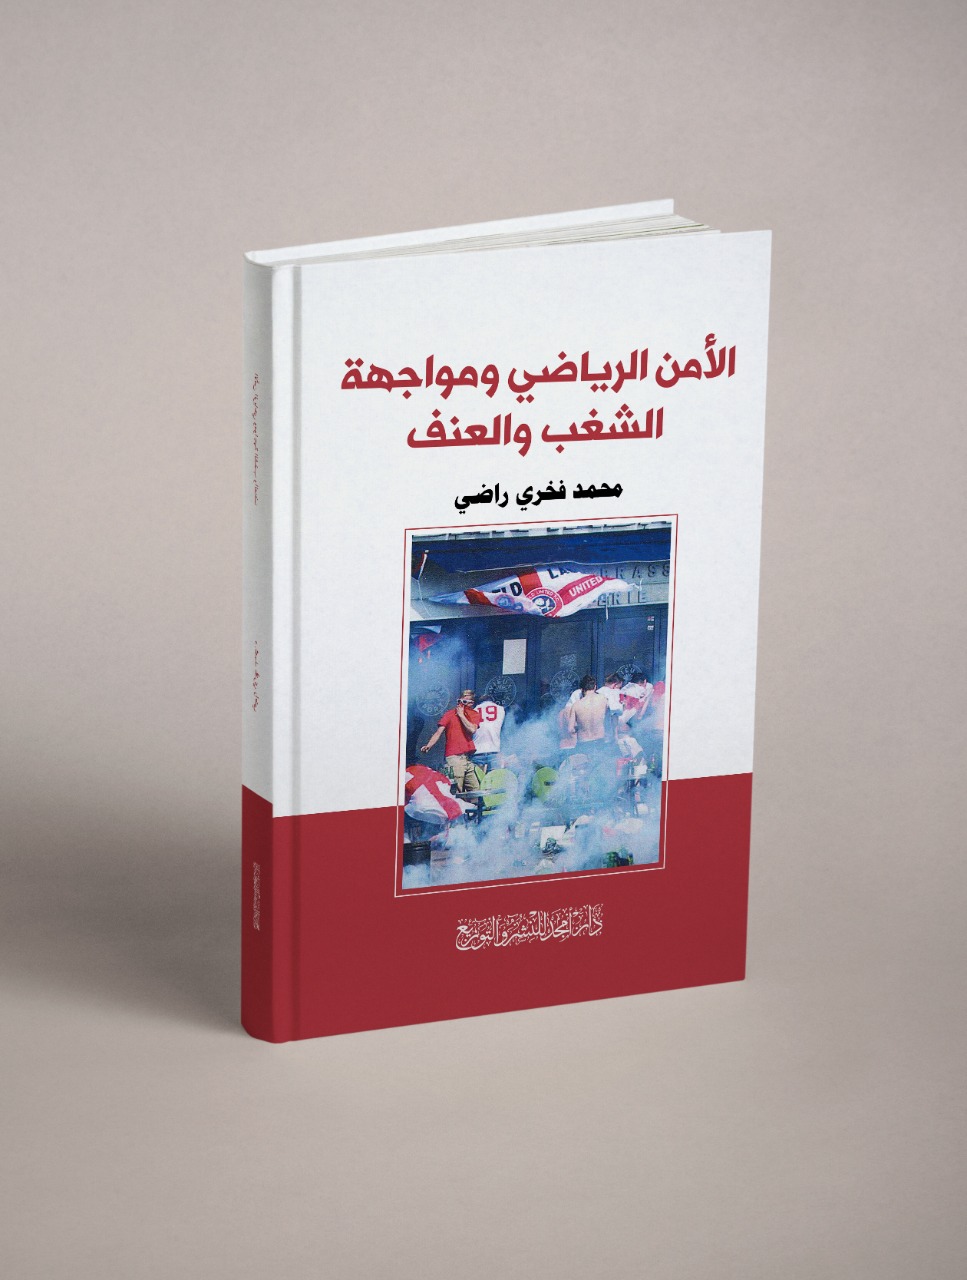 الامن الرياضي ومواجهة الشغب والعنف كتاب جديد ل محمد طنبور